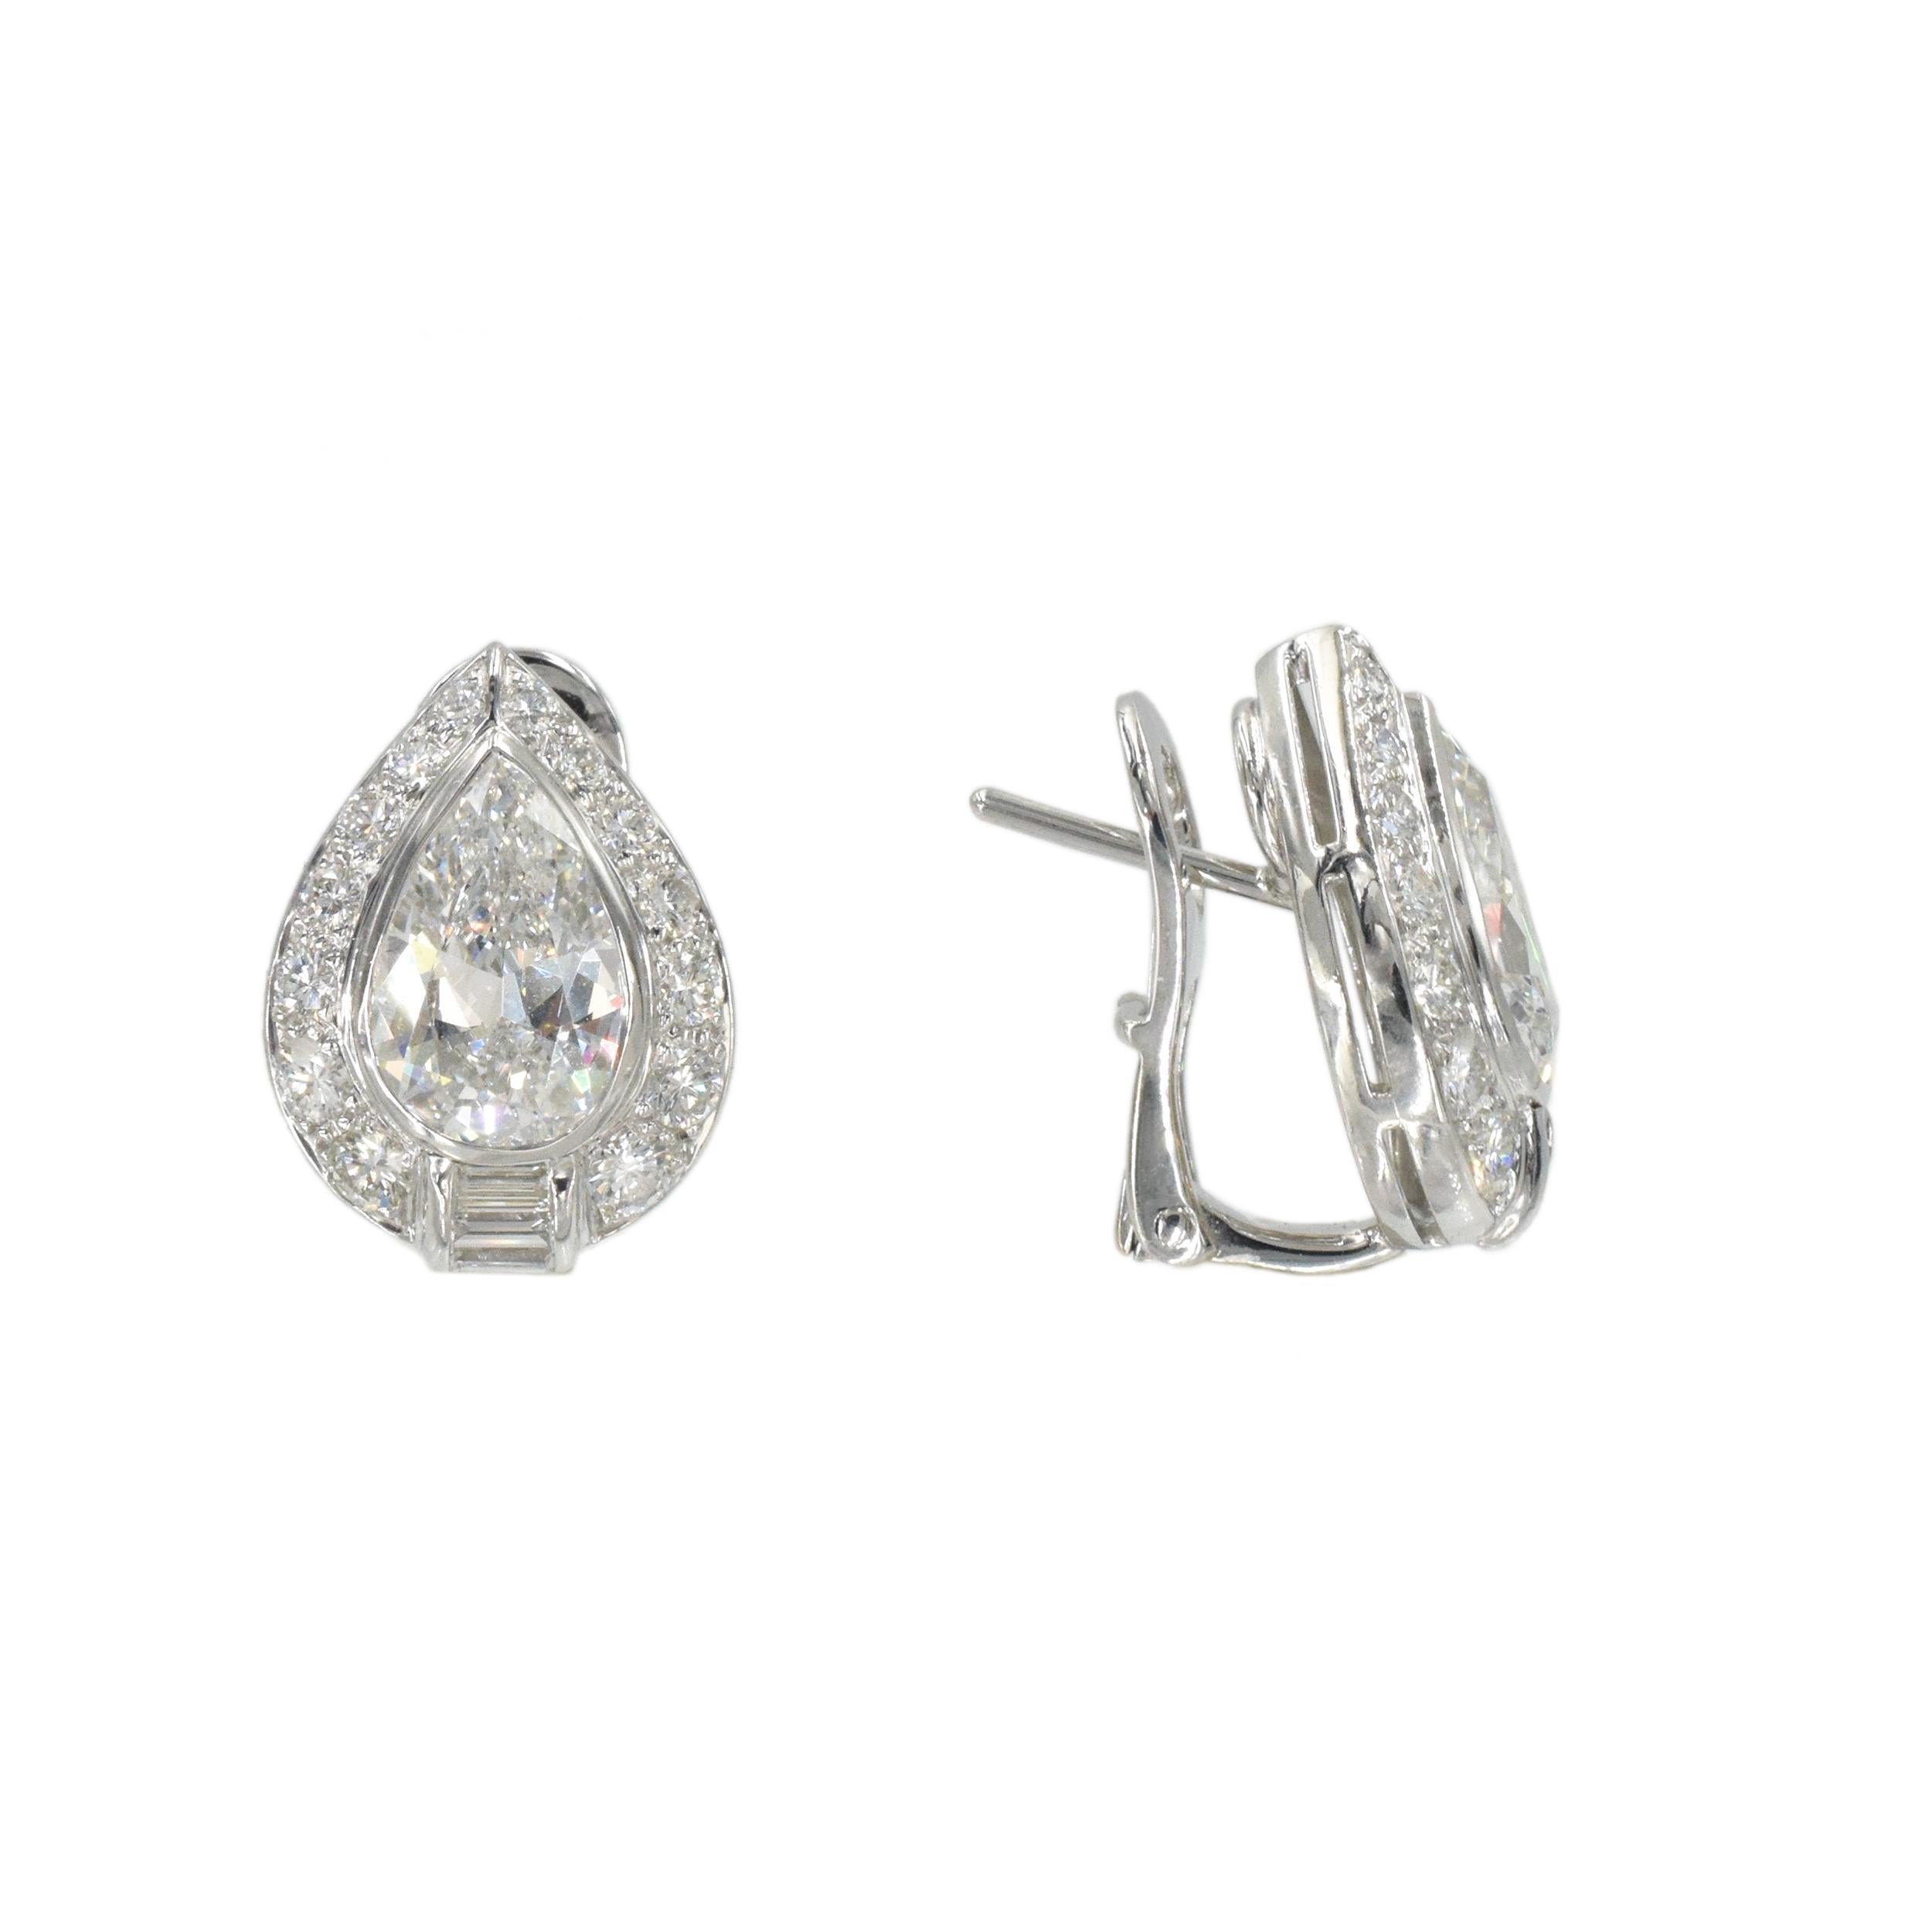 Pear Cut Bvlgari Diamond Earrings